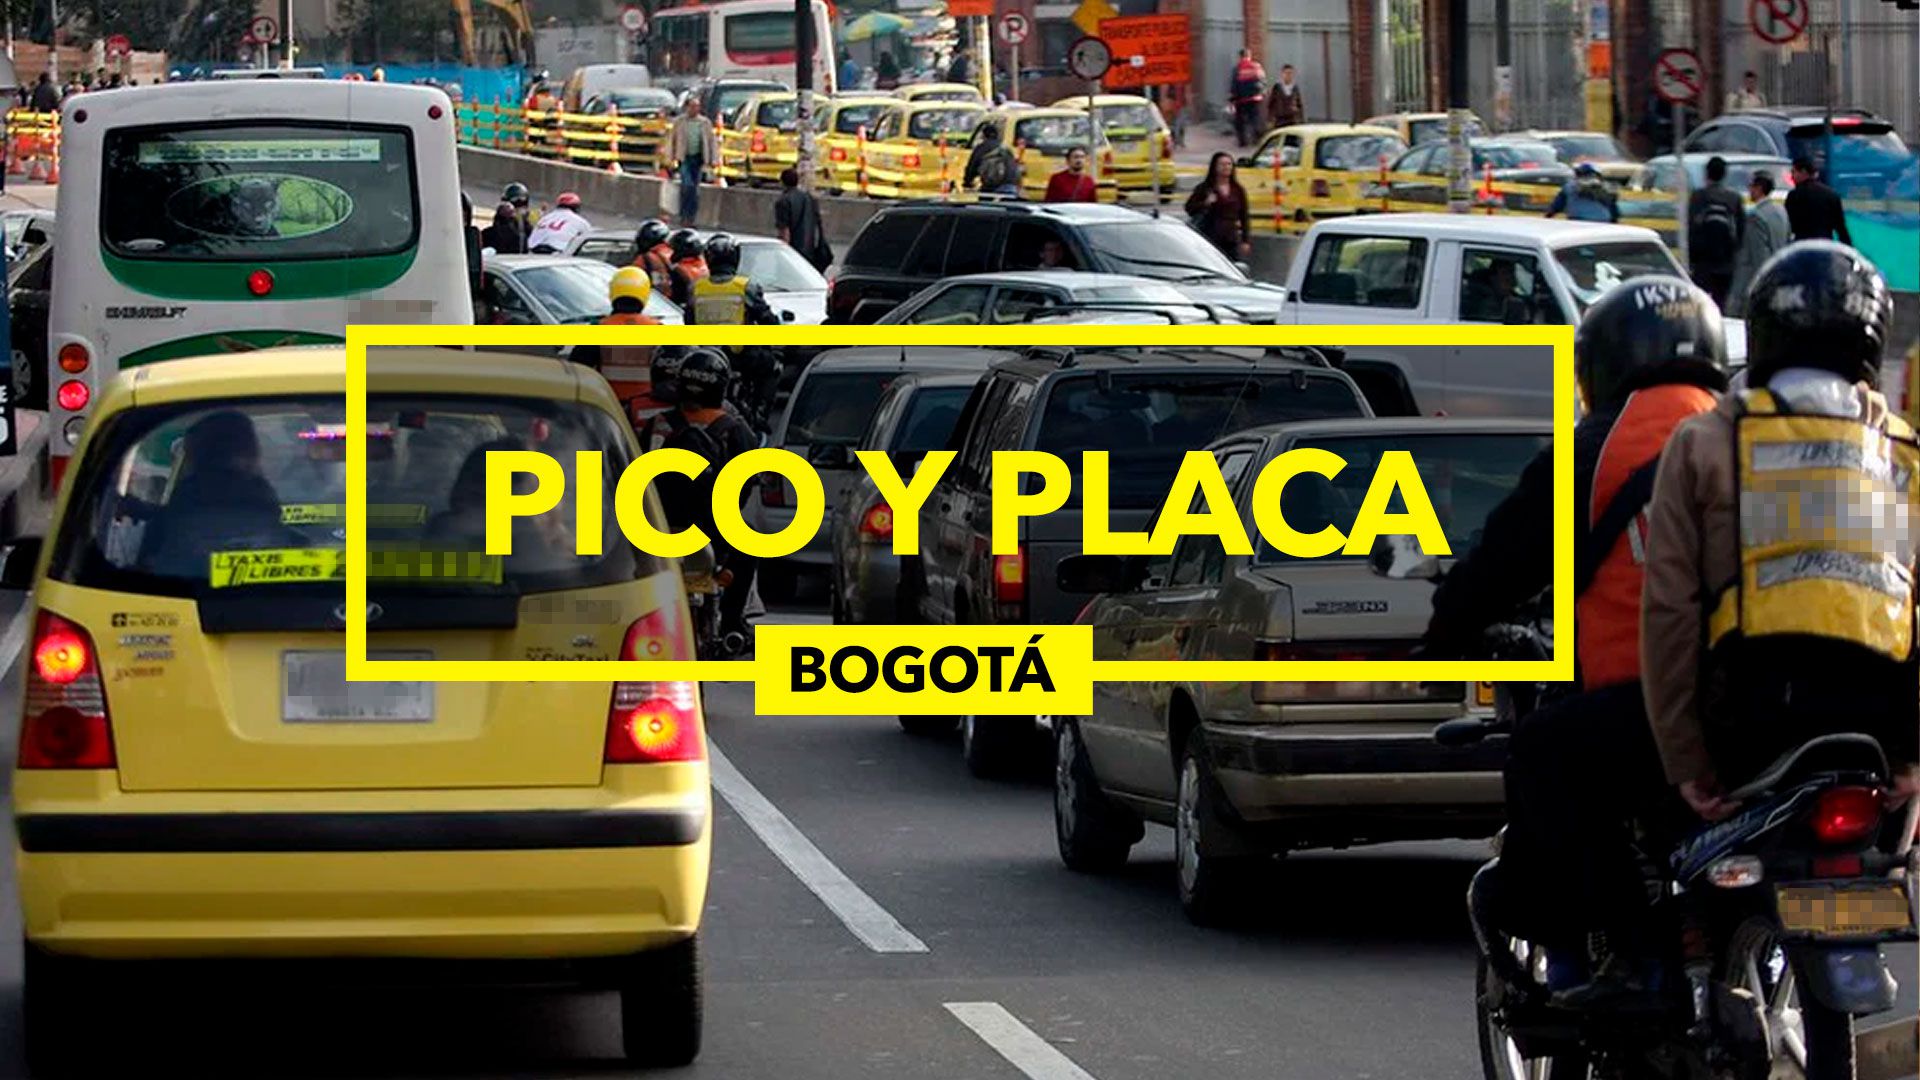 El Pico y Placa comienza desde las 5:30 horas y termina hasta las 21:00 horas (Infobae/Jovani Pérez)